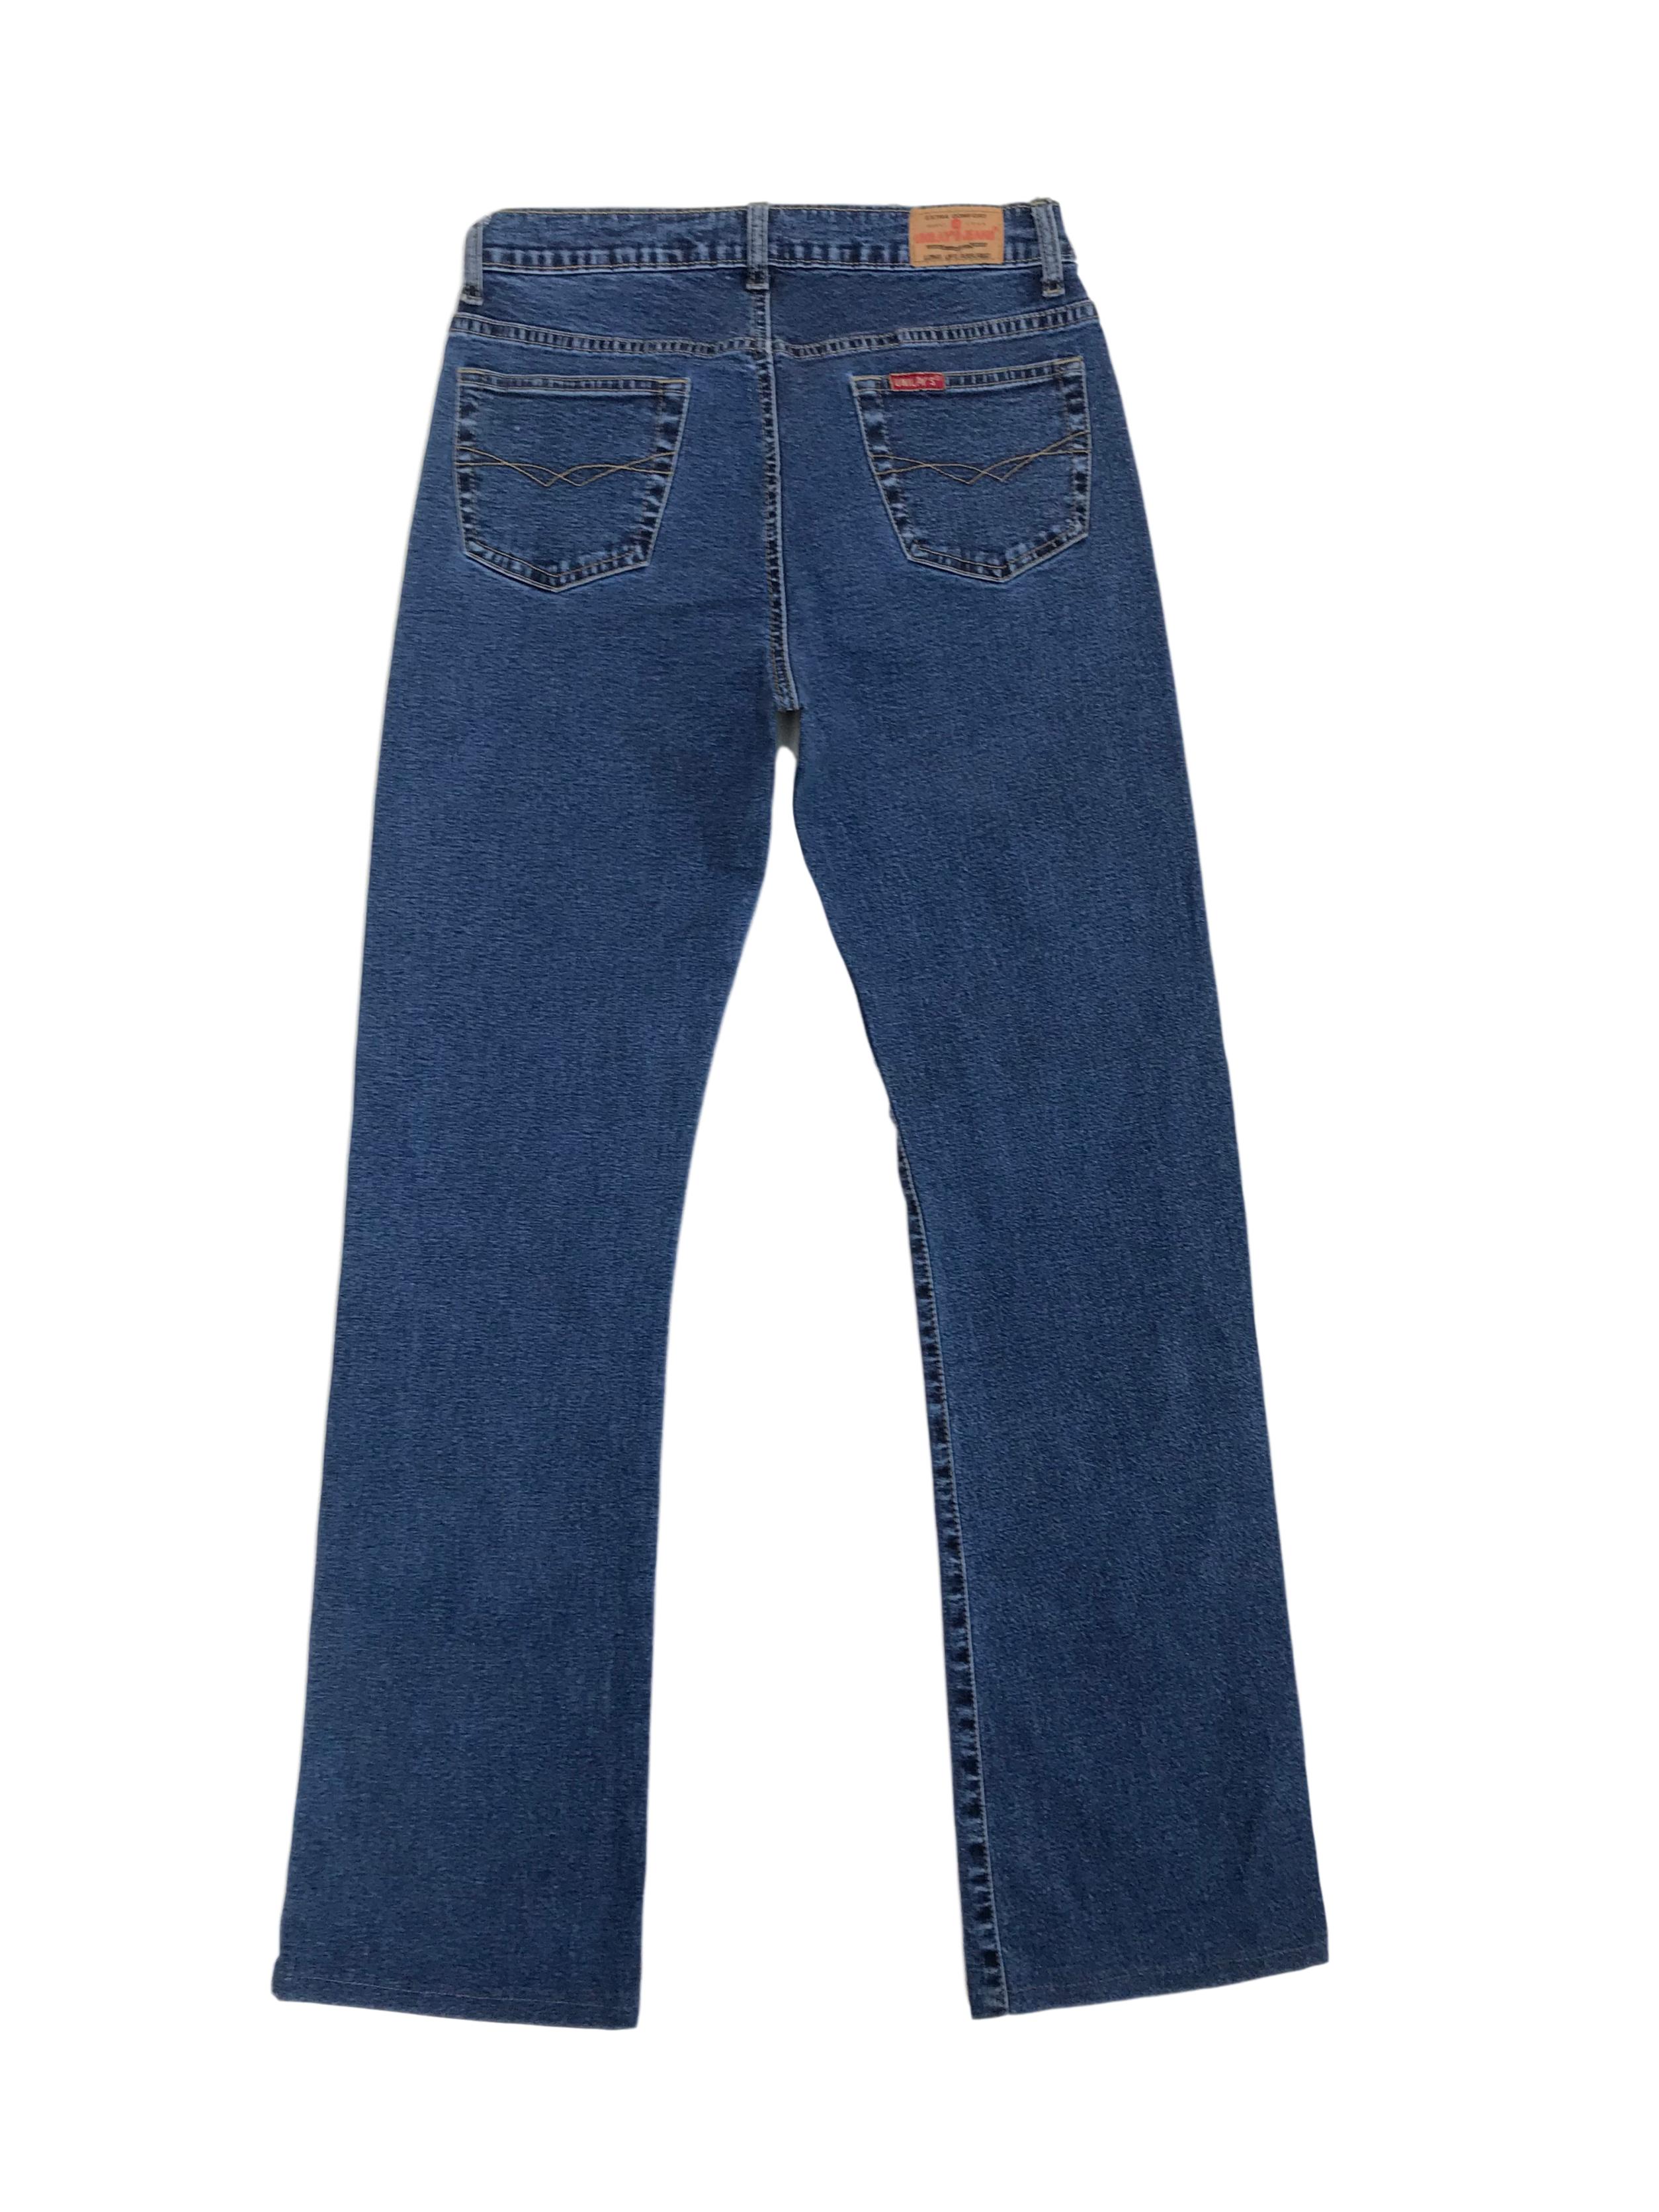 Pantalón jean vintage a la cintura, 96% algodón ligeramente stretch, pierna recta